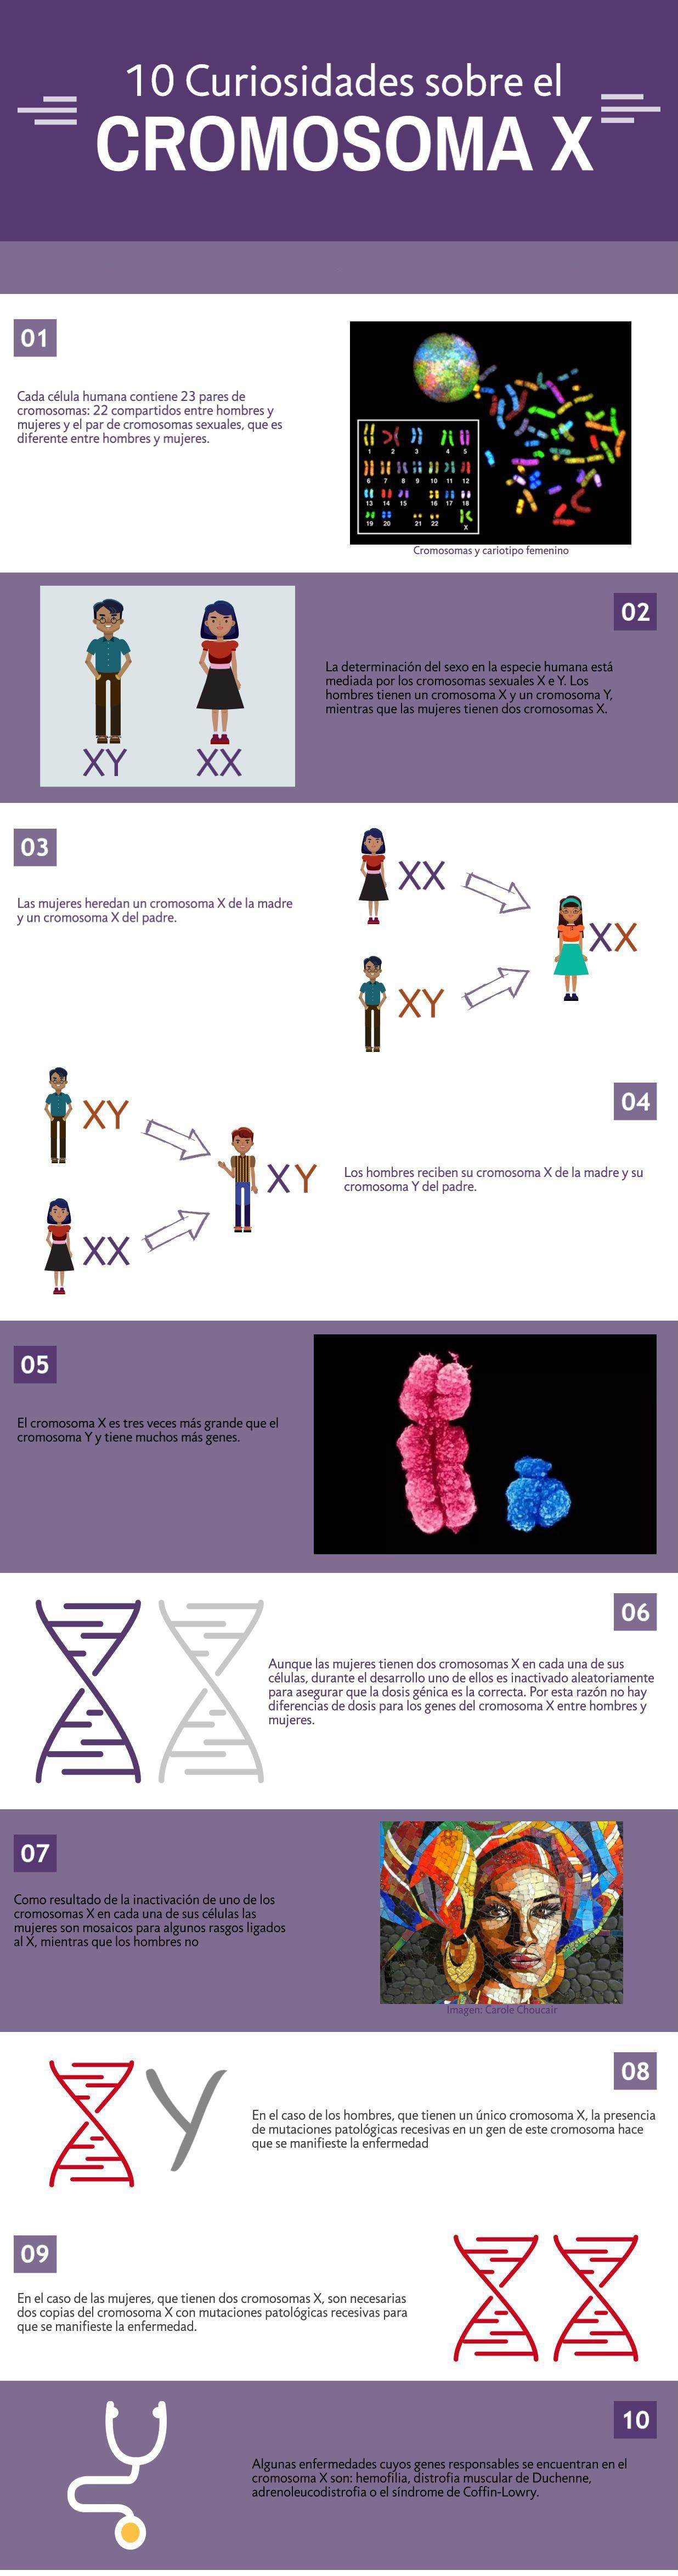 10 Curiosidades sobre el cromosoma X